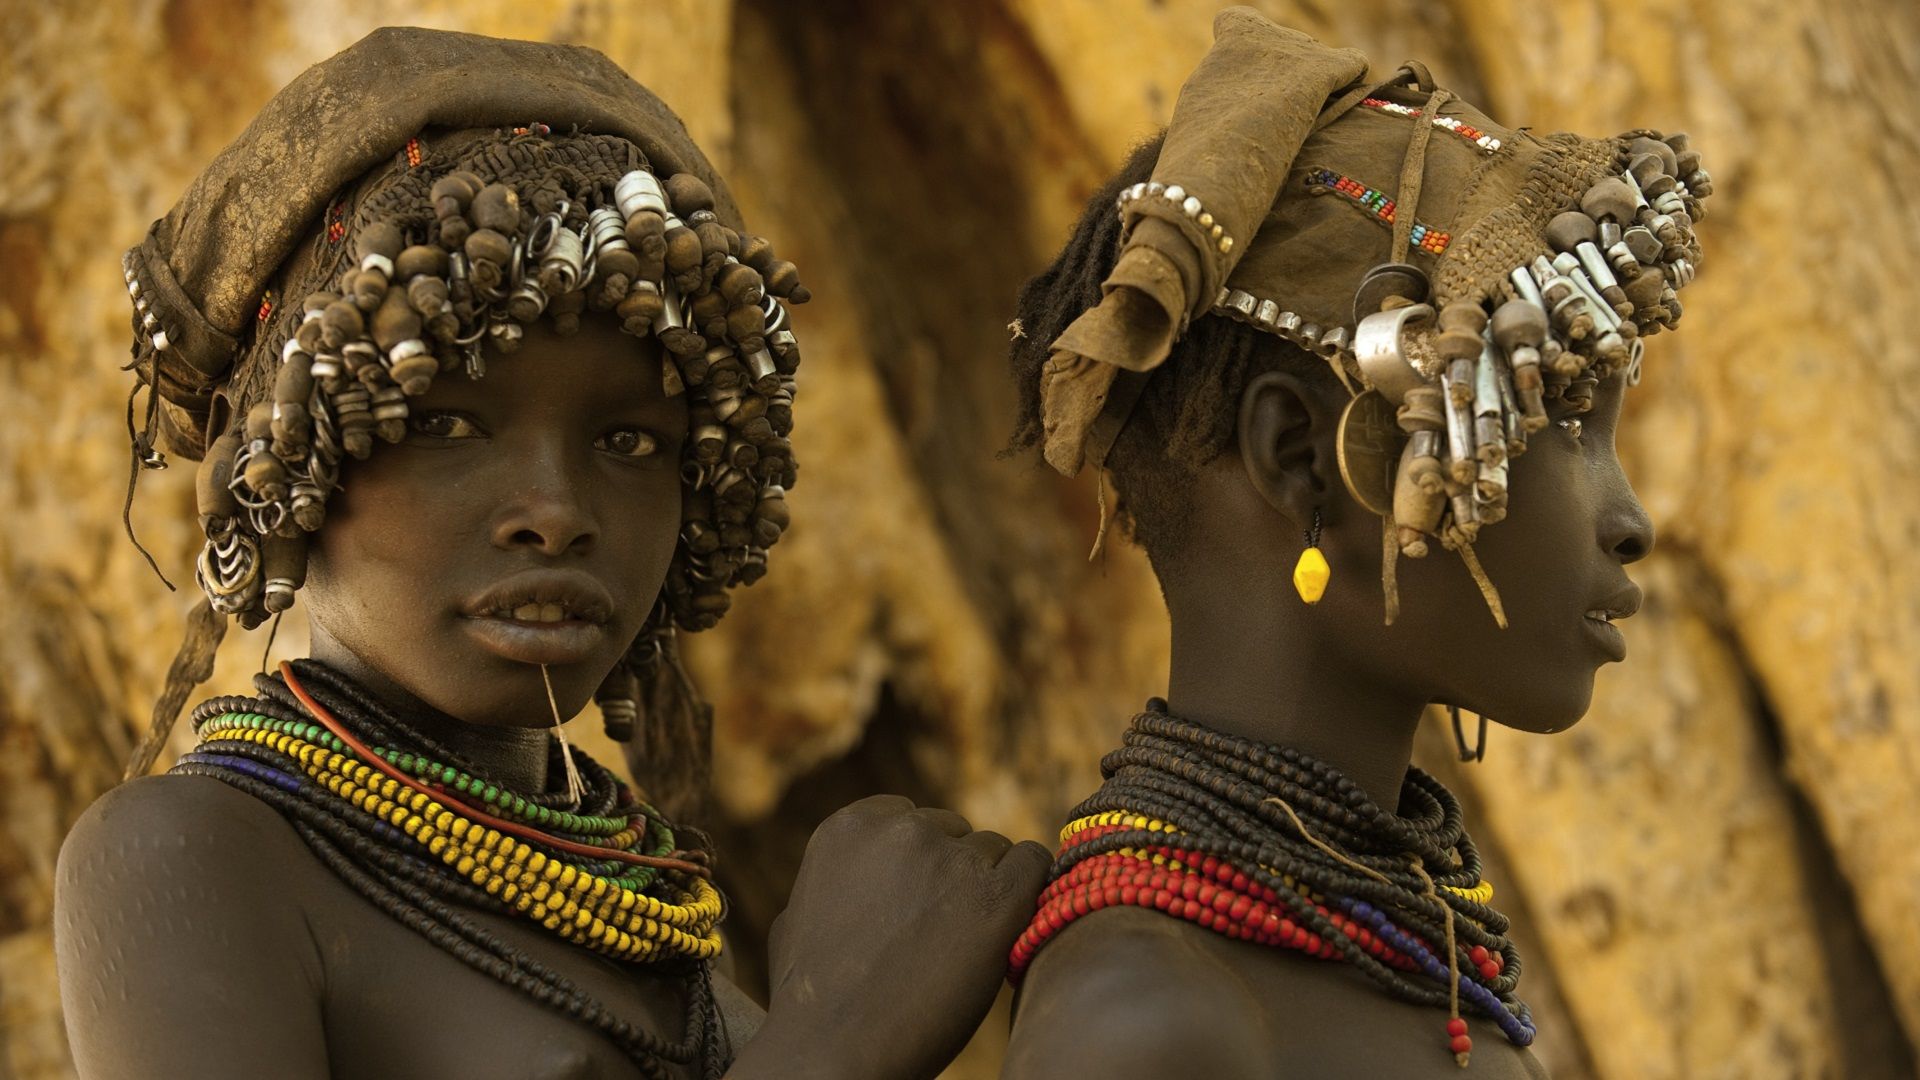 Etnicky pestrá Etiopie